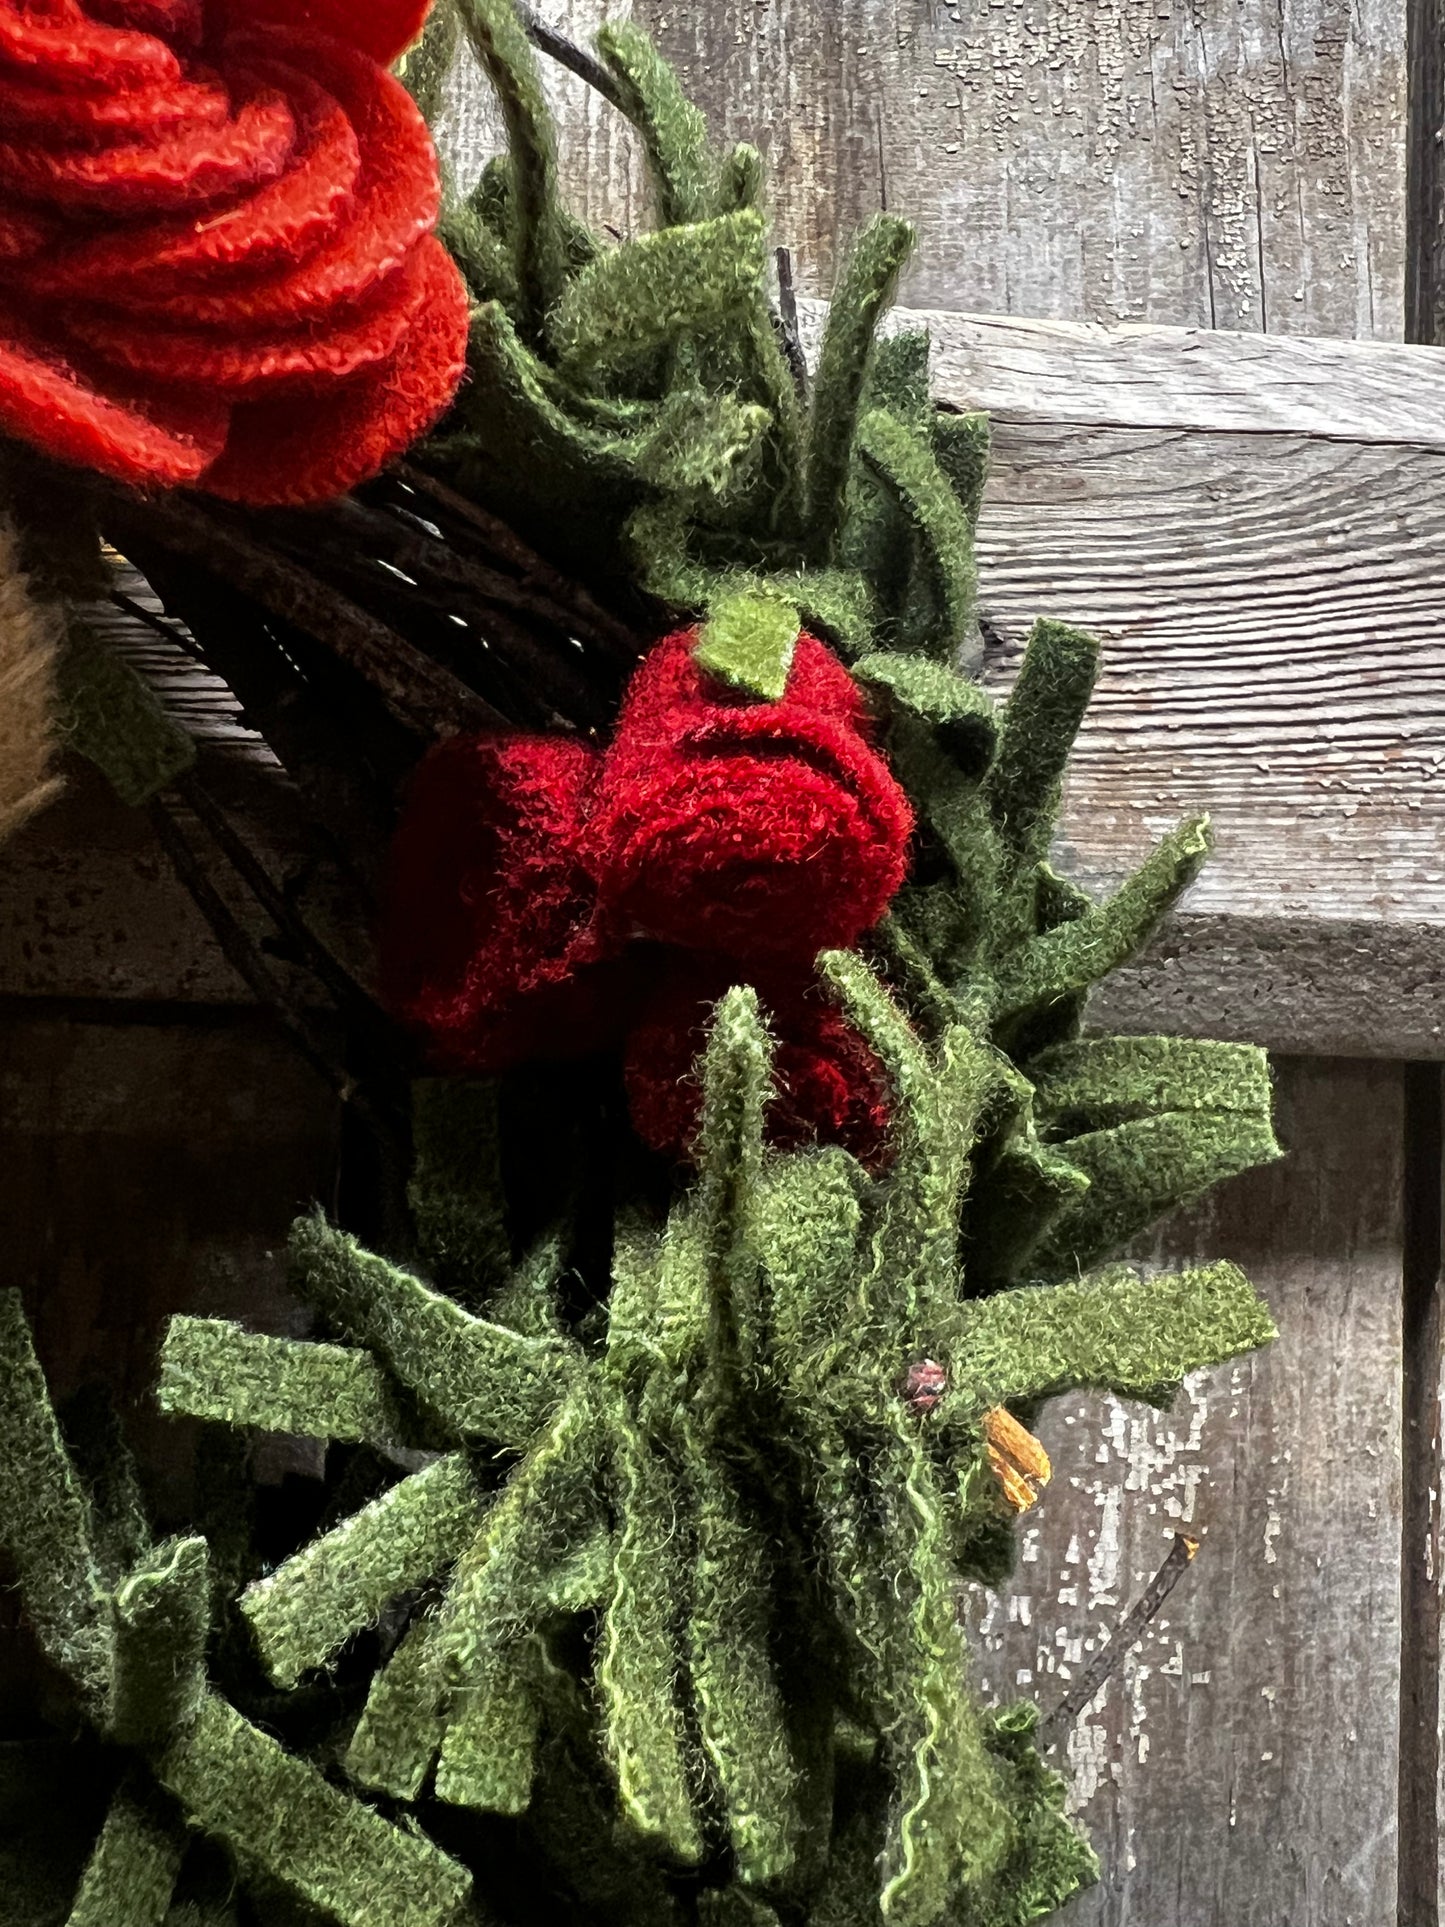 Wreath, 10", WOOLY ROSES & BERRIES